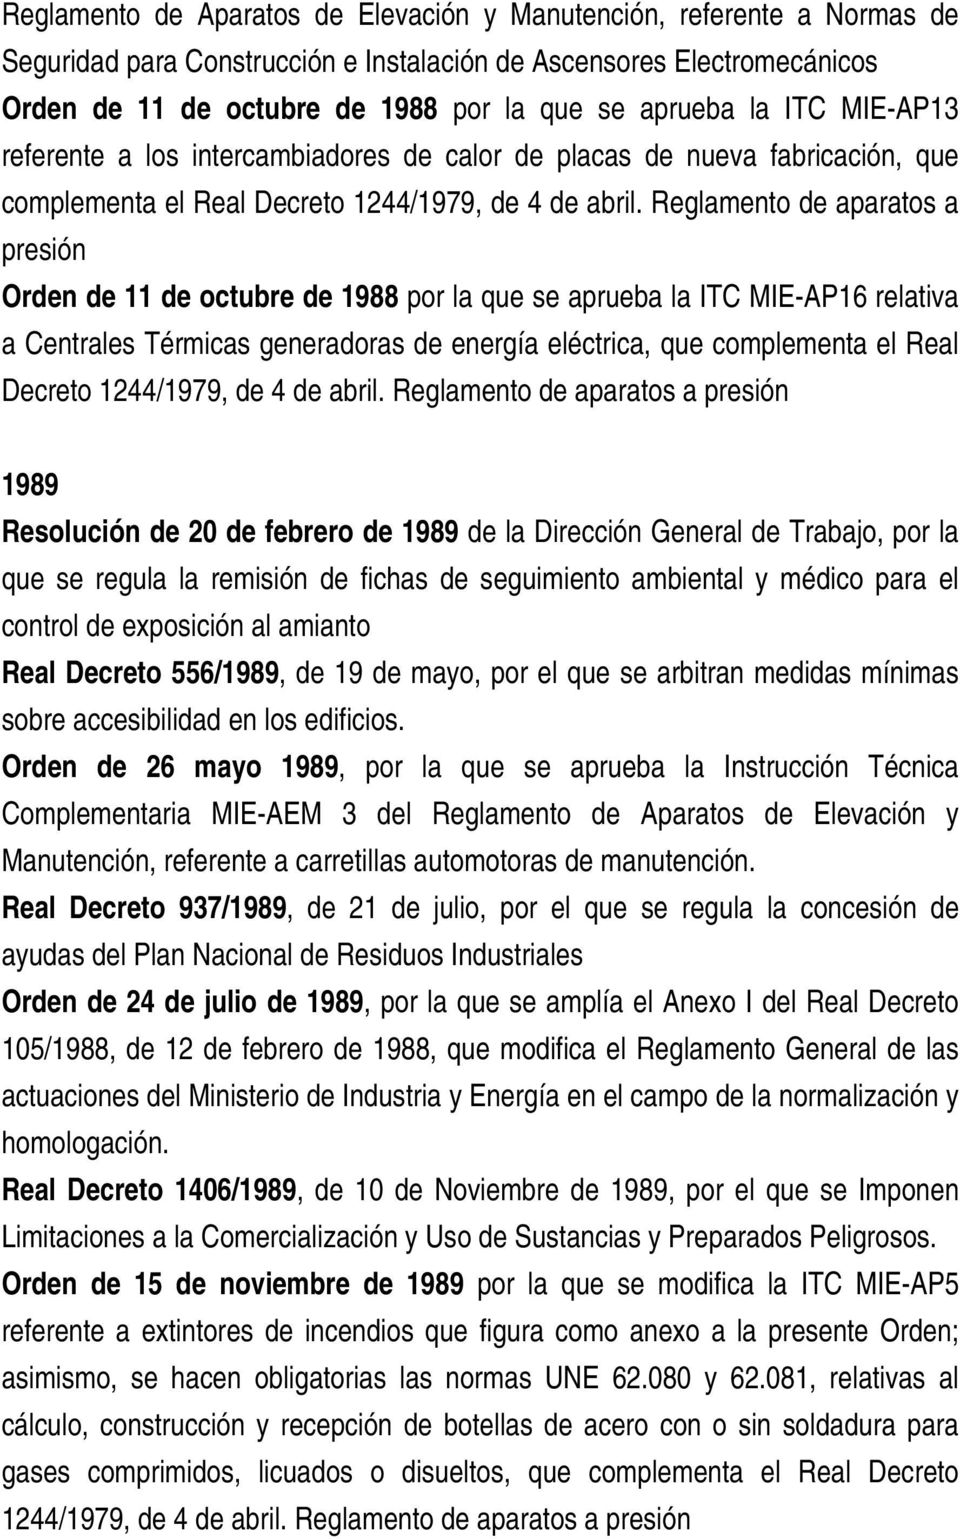 Reglamento de aparatos a presión Orden de 11 de octubre de 1988 por la que se aprueba la ITC MIE-AP16 relativa a Centrales Térmicas generadoras de energía eléctrica, que complementa el Real Decreto